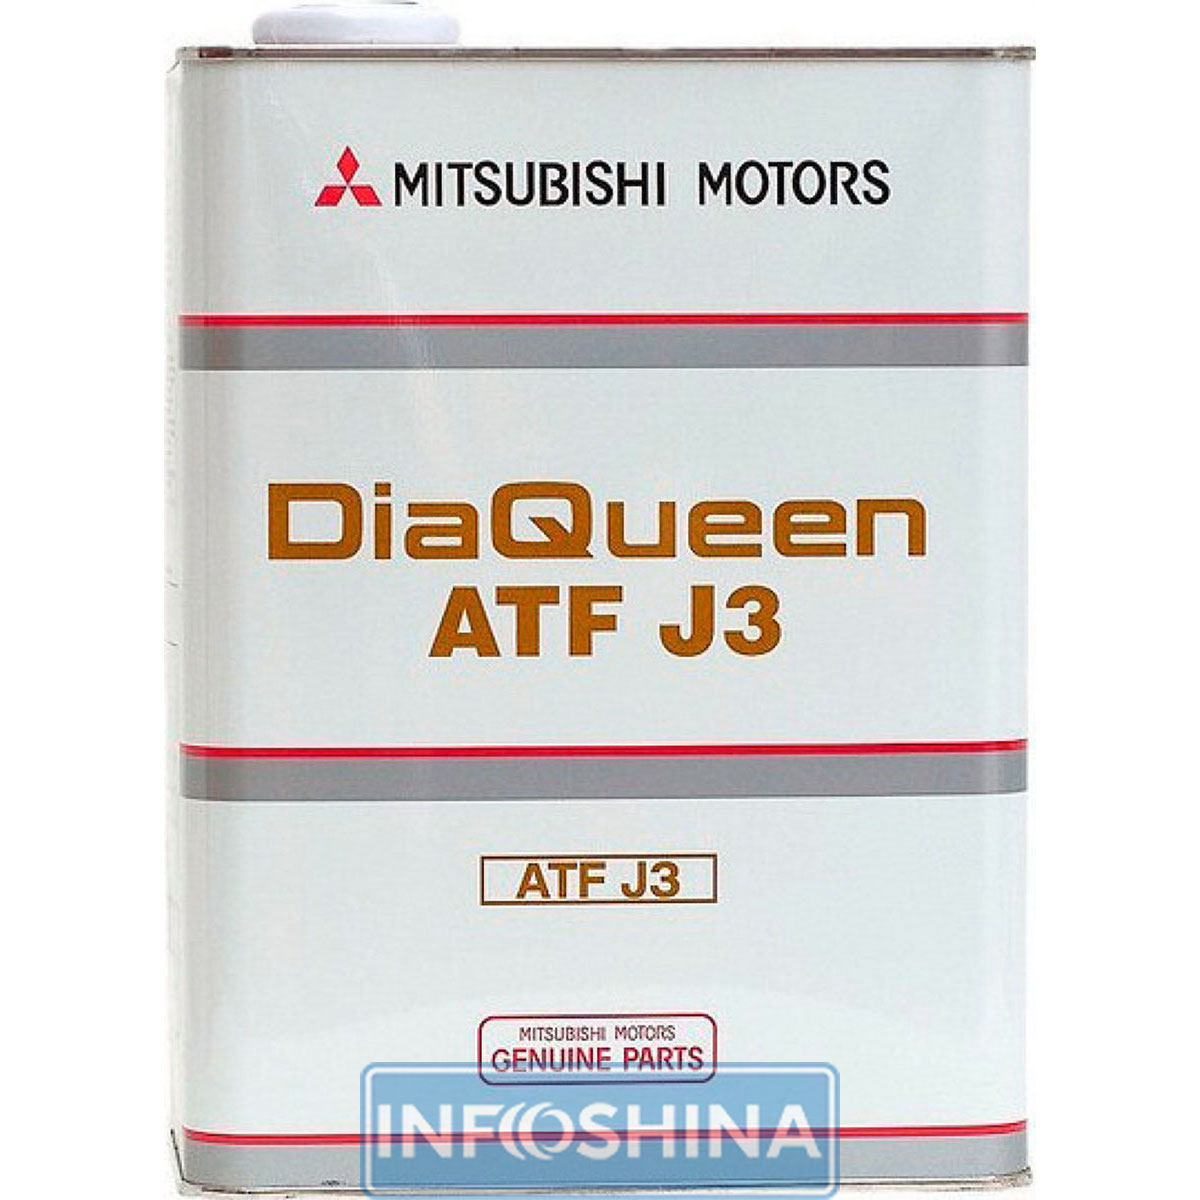 Mitsubishi DiaQueen ATF J3